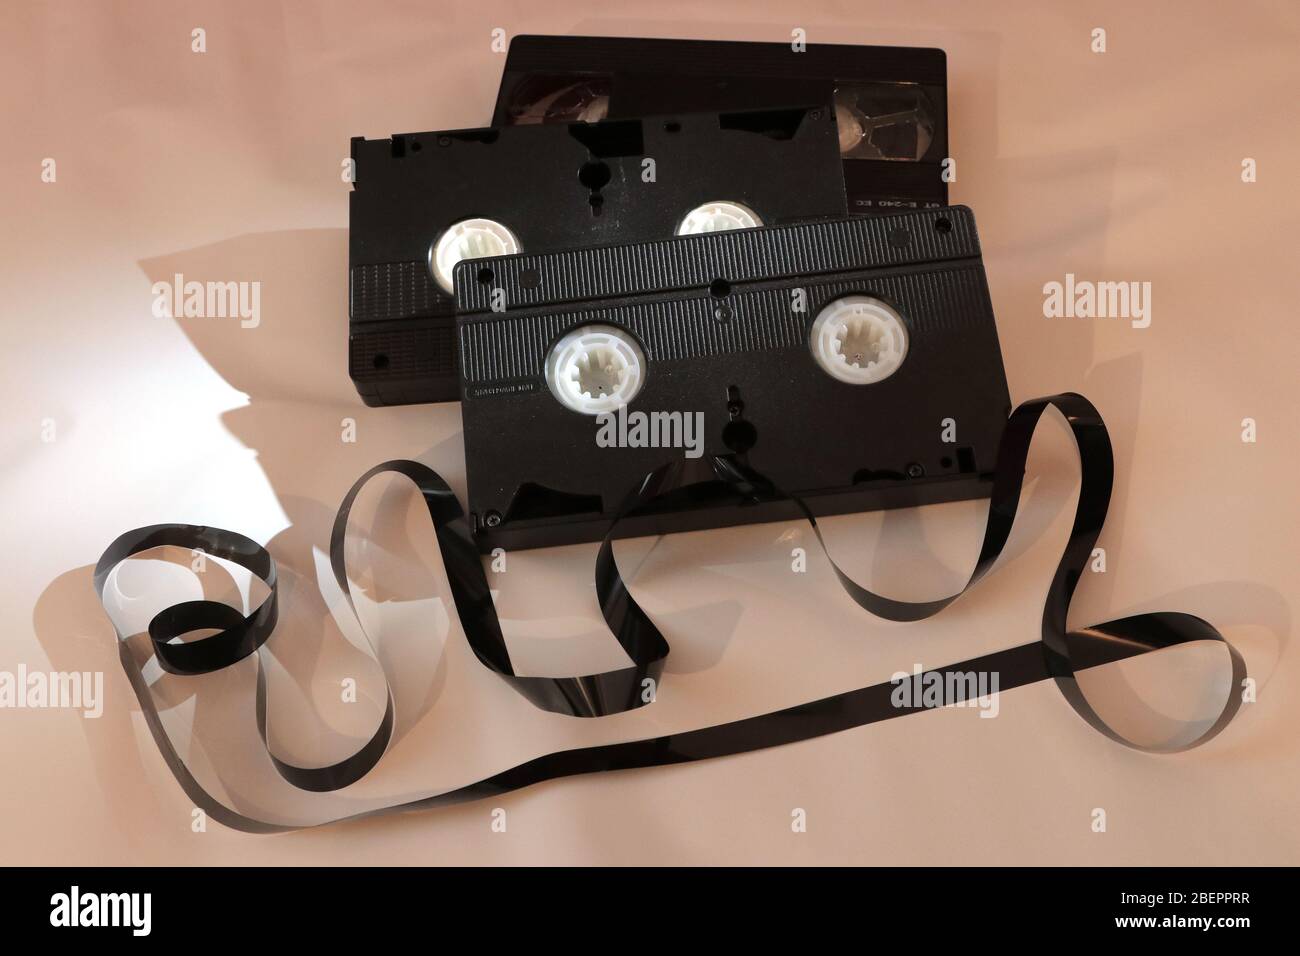 Berlin. Mai 2019. VHS Kassette mit herausziehender Magnetfolie, aufgenommen  am 19. Mai 2019 in Berlin. Das analoge Aufnahme- und Abspielsystem für  Videorecorder wurde in den 1970er Jahren erfunden und war der Vorläufer